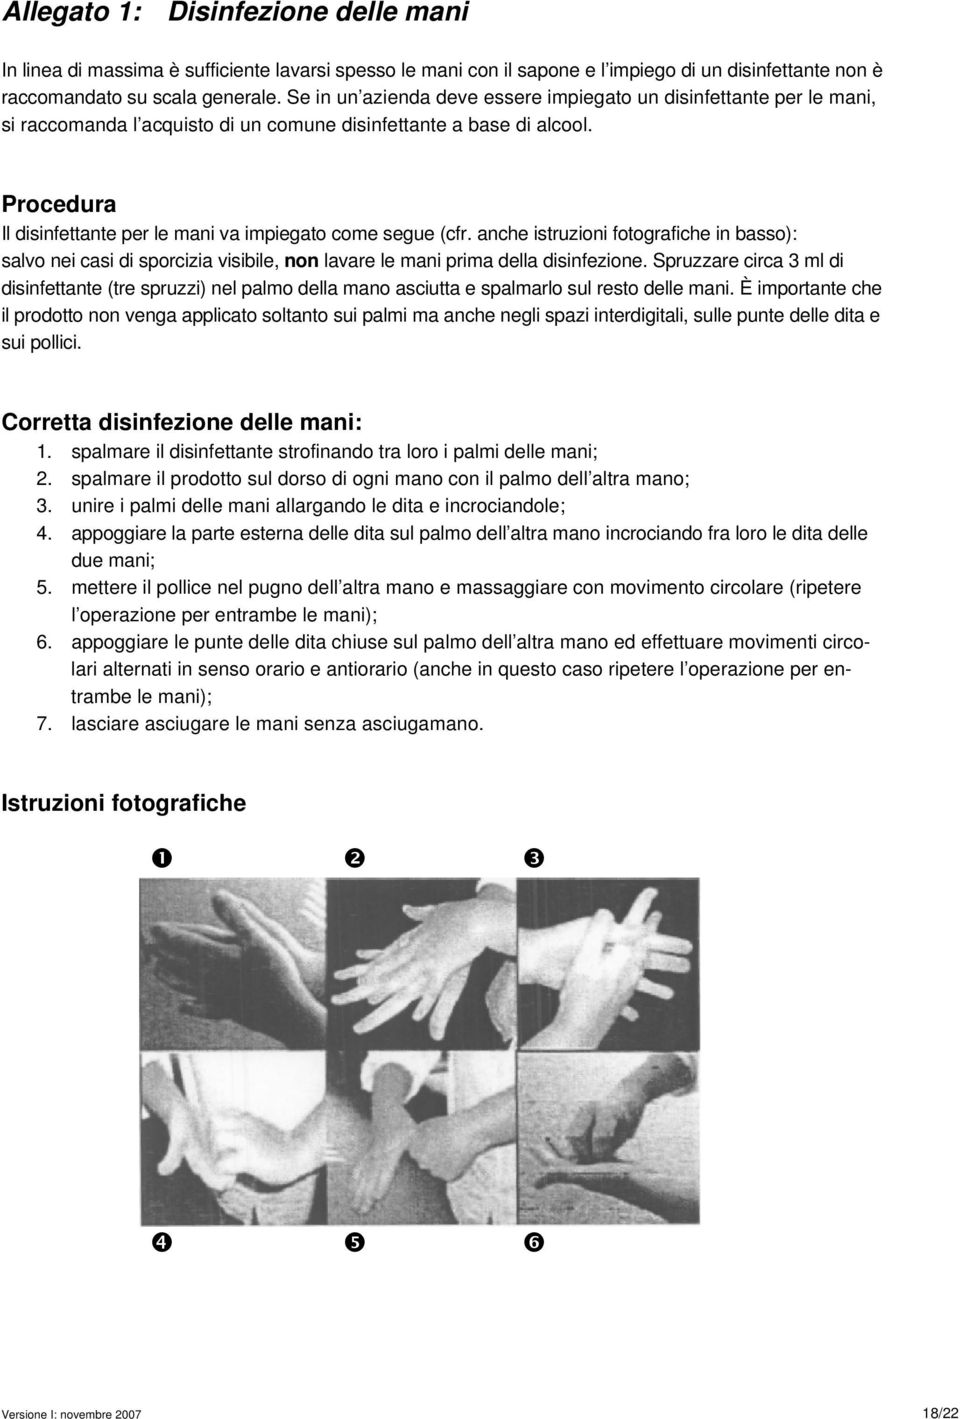 Procedura Il disinfettante per le mani va impiegato come segue (cfr. anche istruzioni fotografiche in basso): salvo nei casi di sporcizia visibile, non lavare le mani prima della disinfezione.